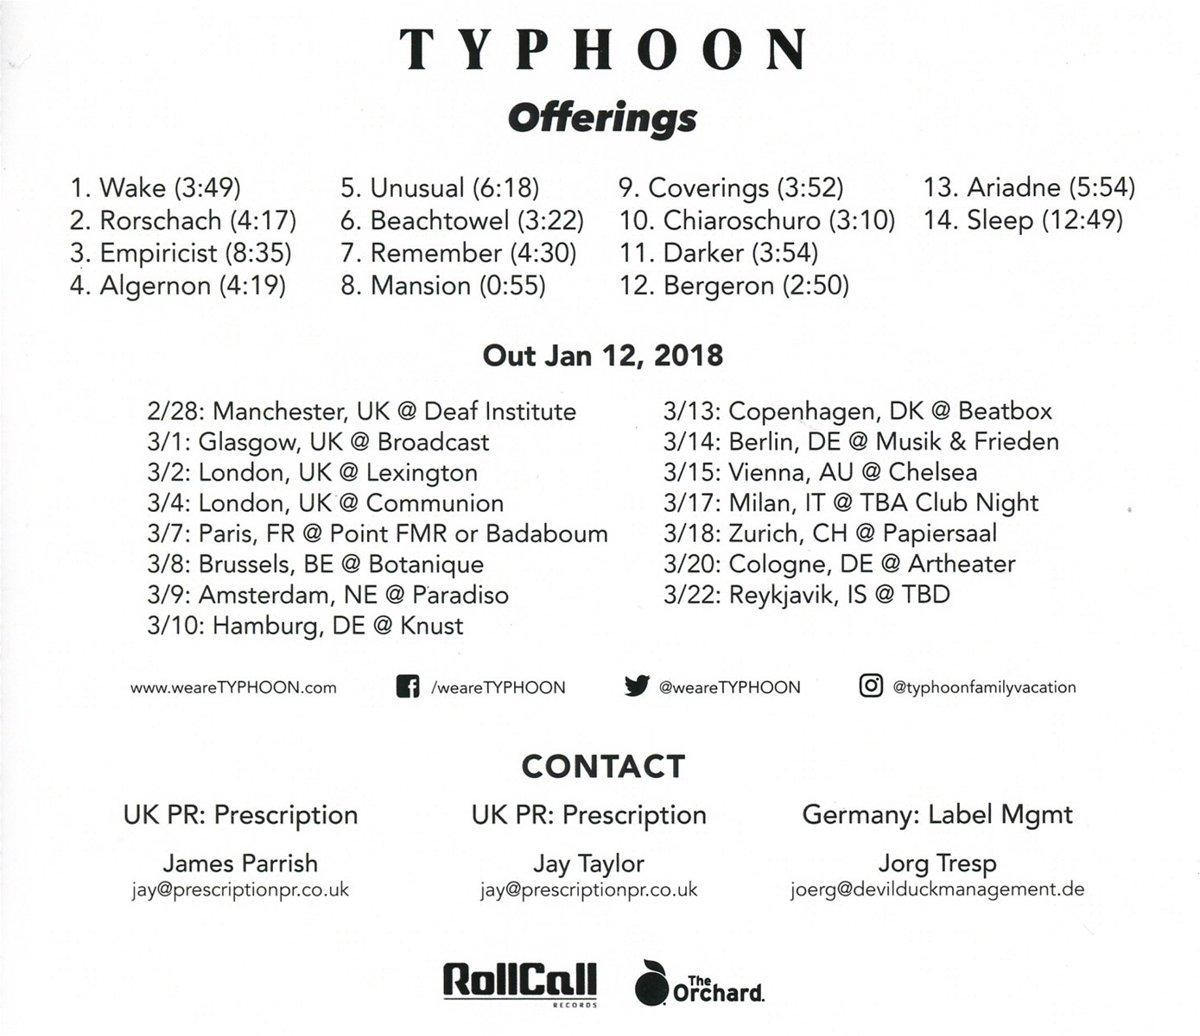 Typhoon - Offerings (CD) -